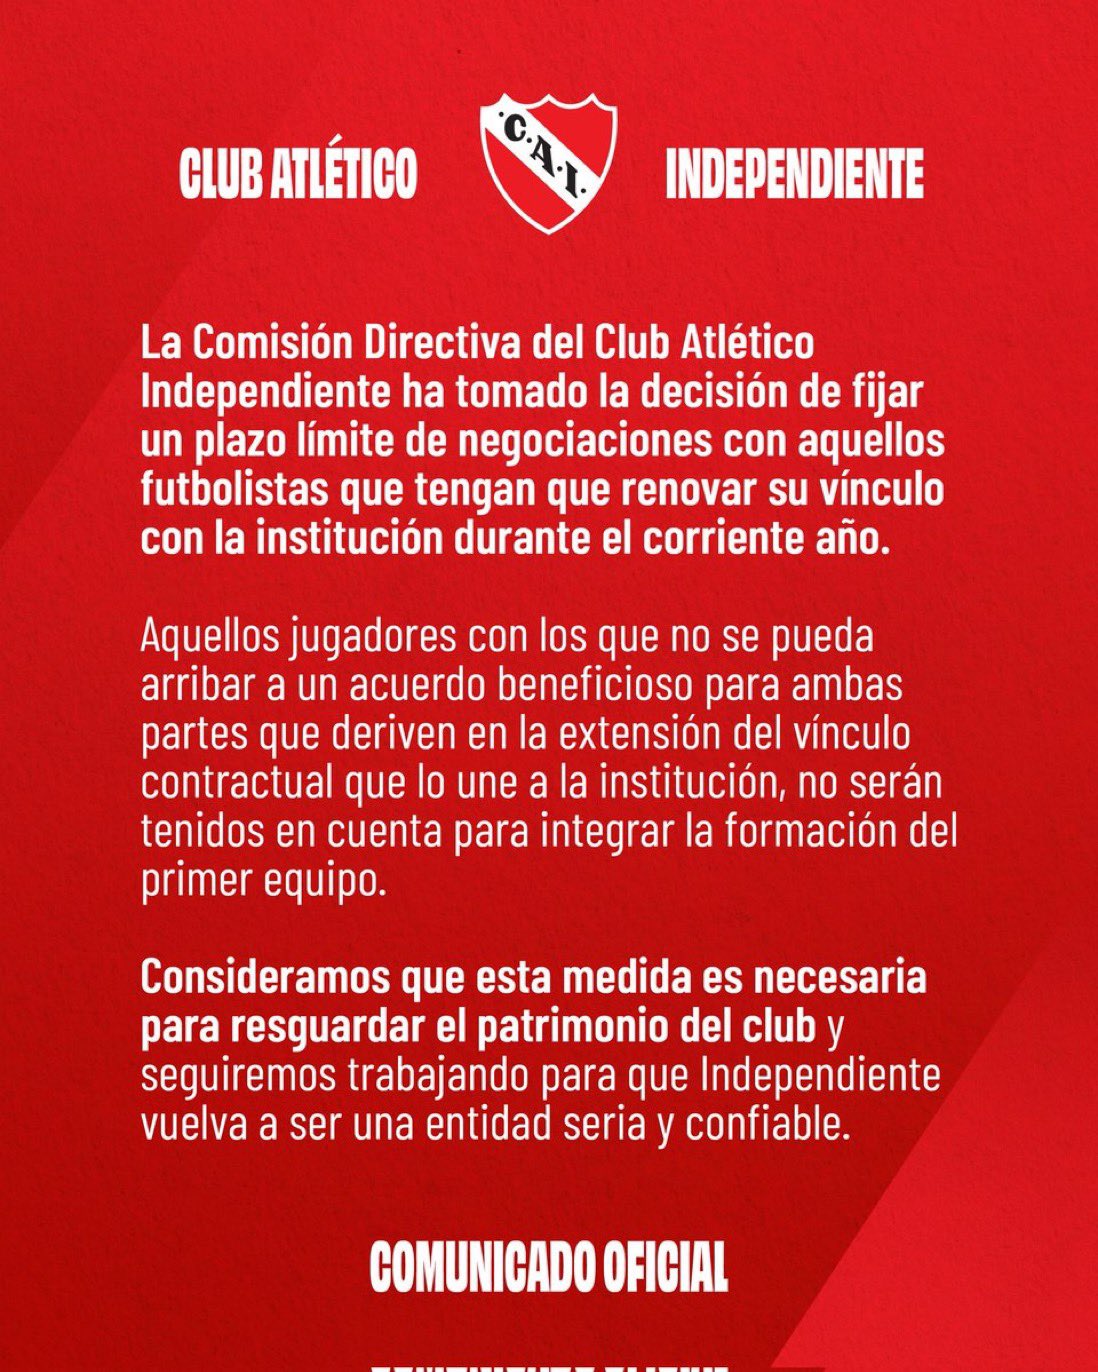 Club Atlético Independiente – es